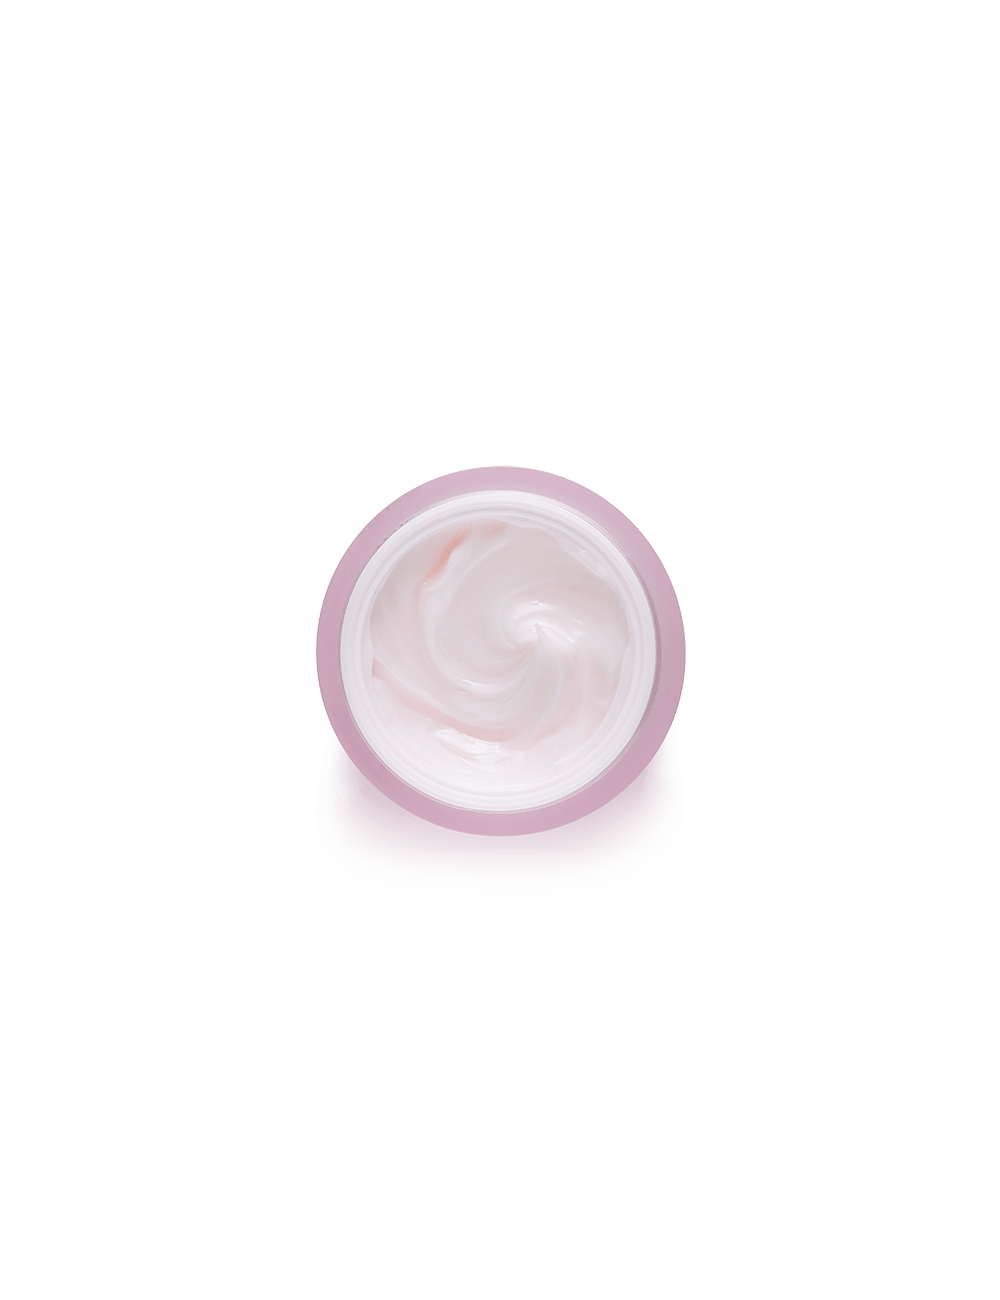 Emulsiones y Cremas al mejor precio: BANILA CO Dear Hydration Boosting Cream de Banila Co. en Skin Thinks - 